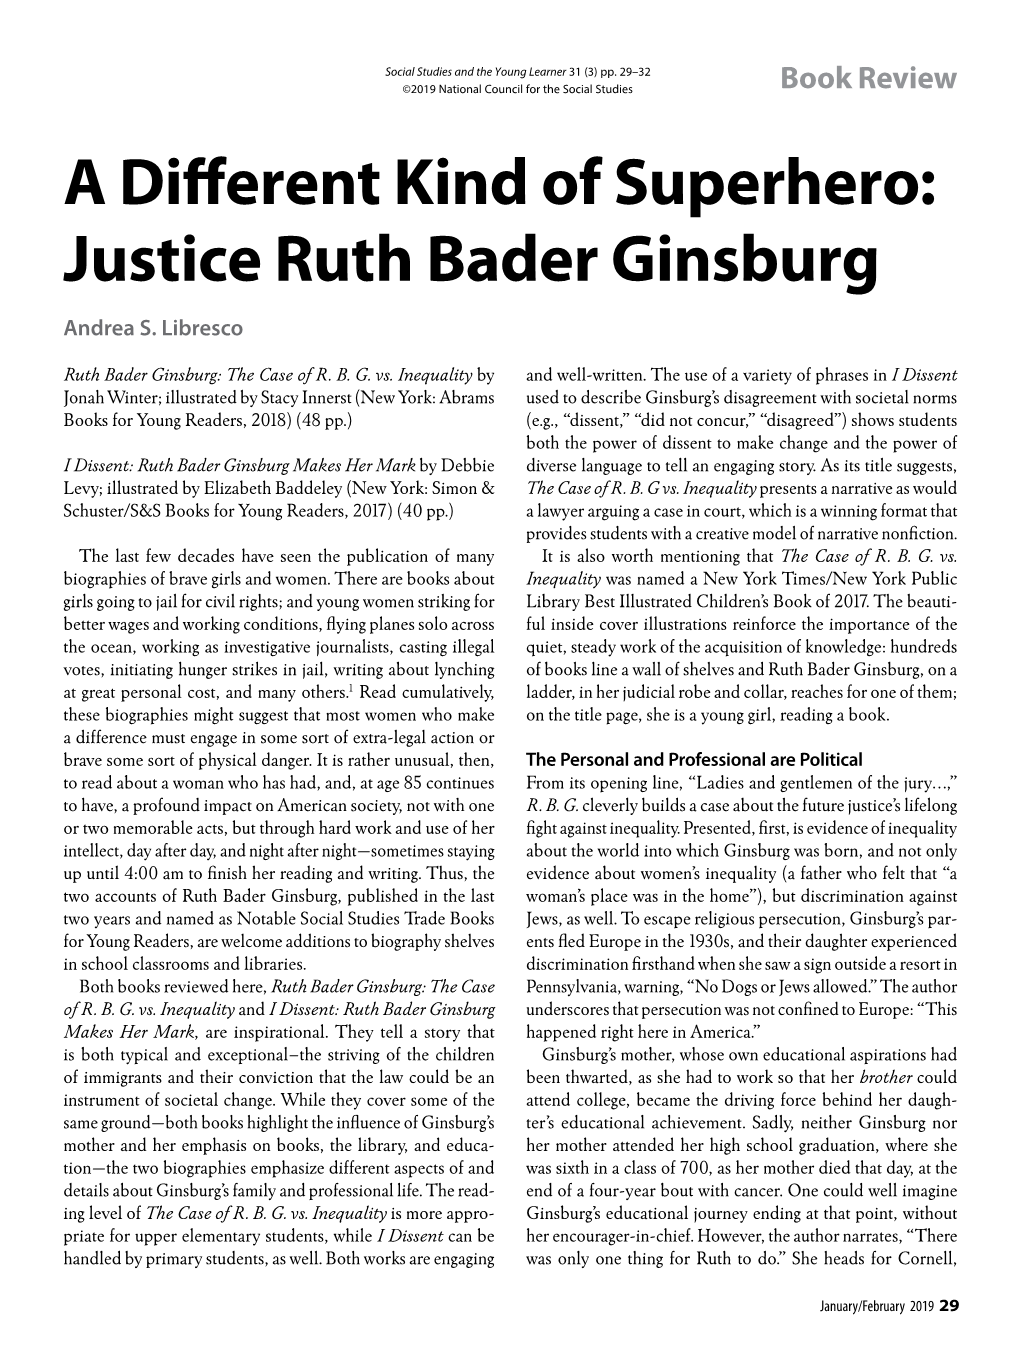 Justice Ruth Bader Ginsburg Andrea S